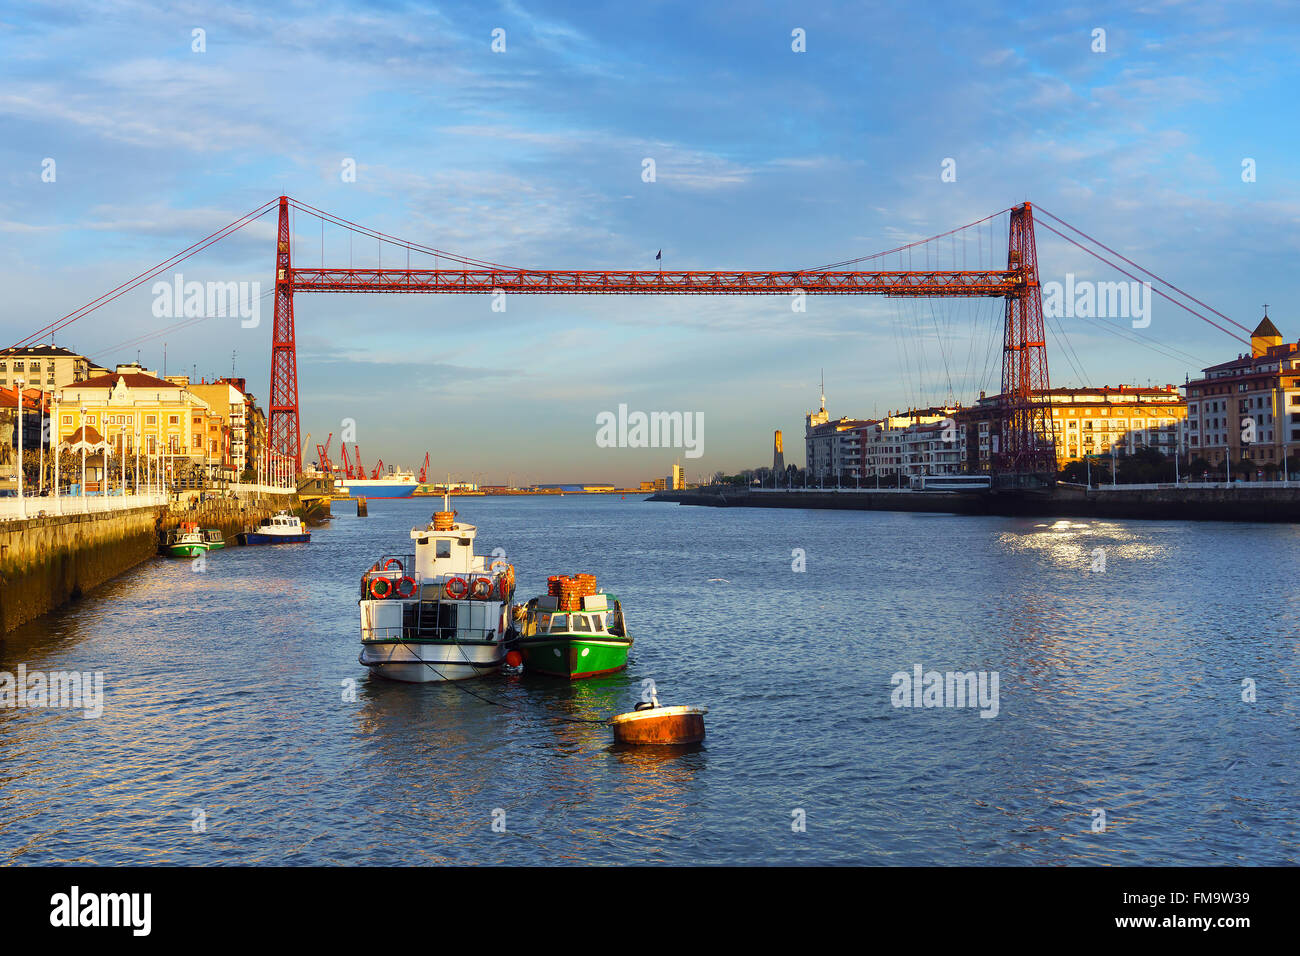 Portugalete et Las Arenas de Getxo avec pont suspendu au lever du soleil Banque D'Images